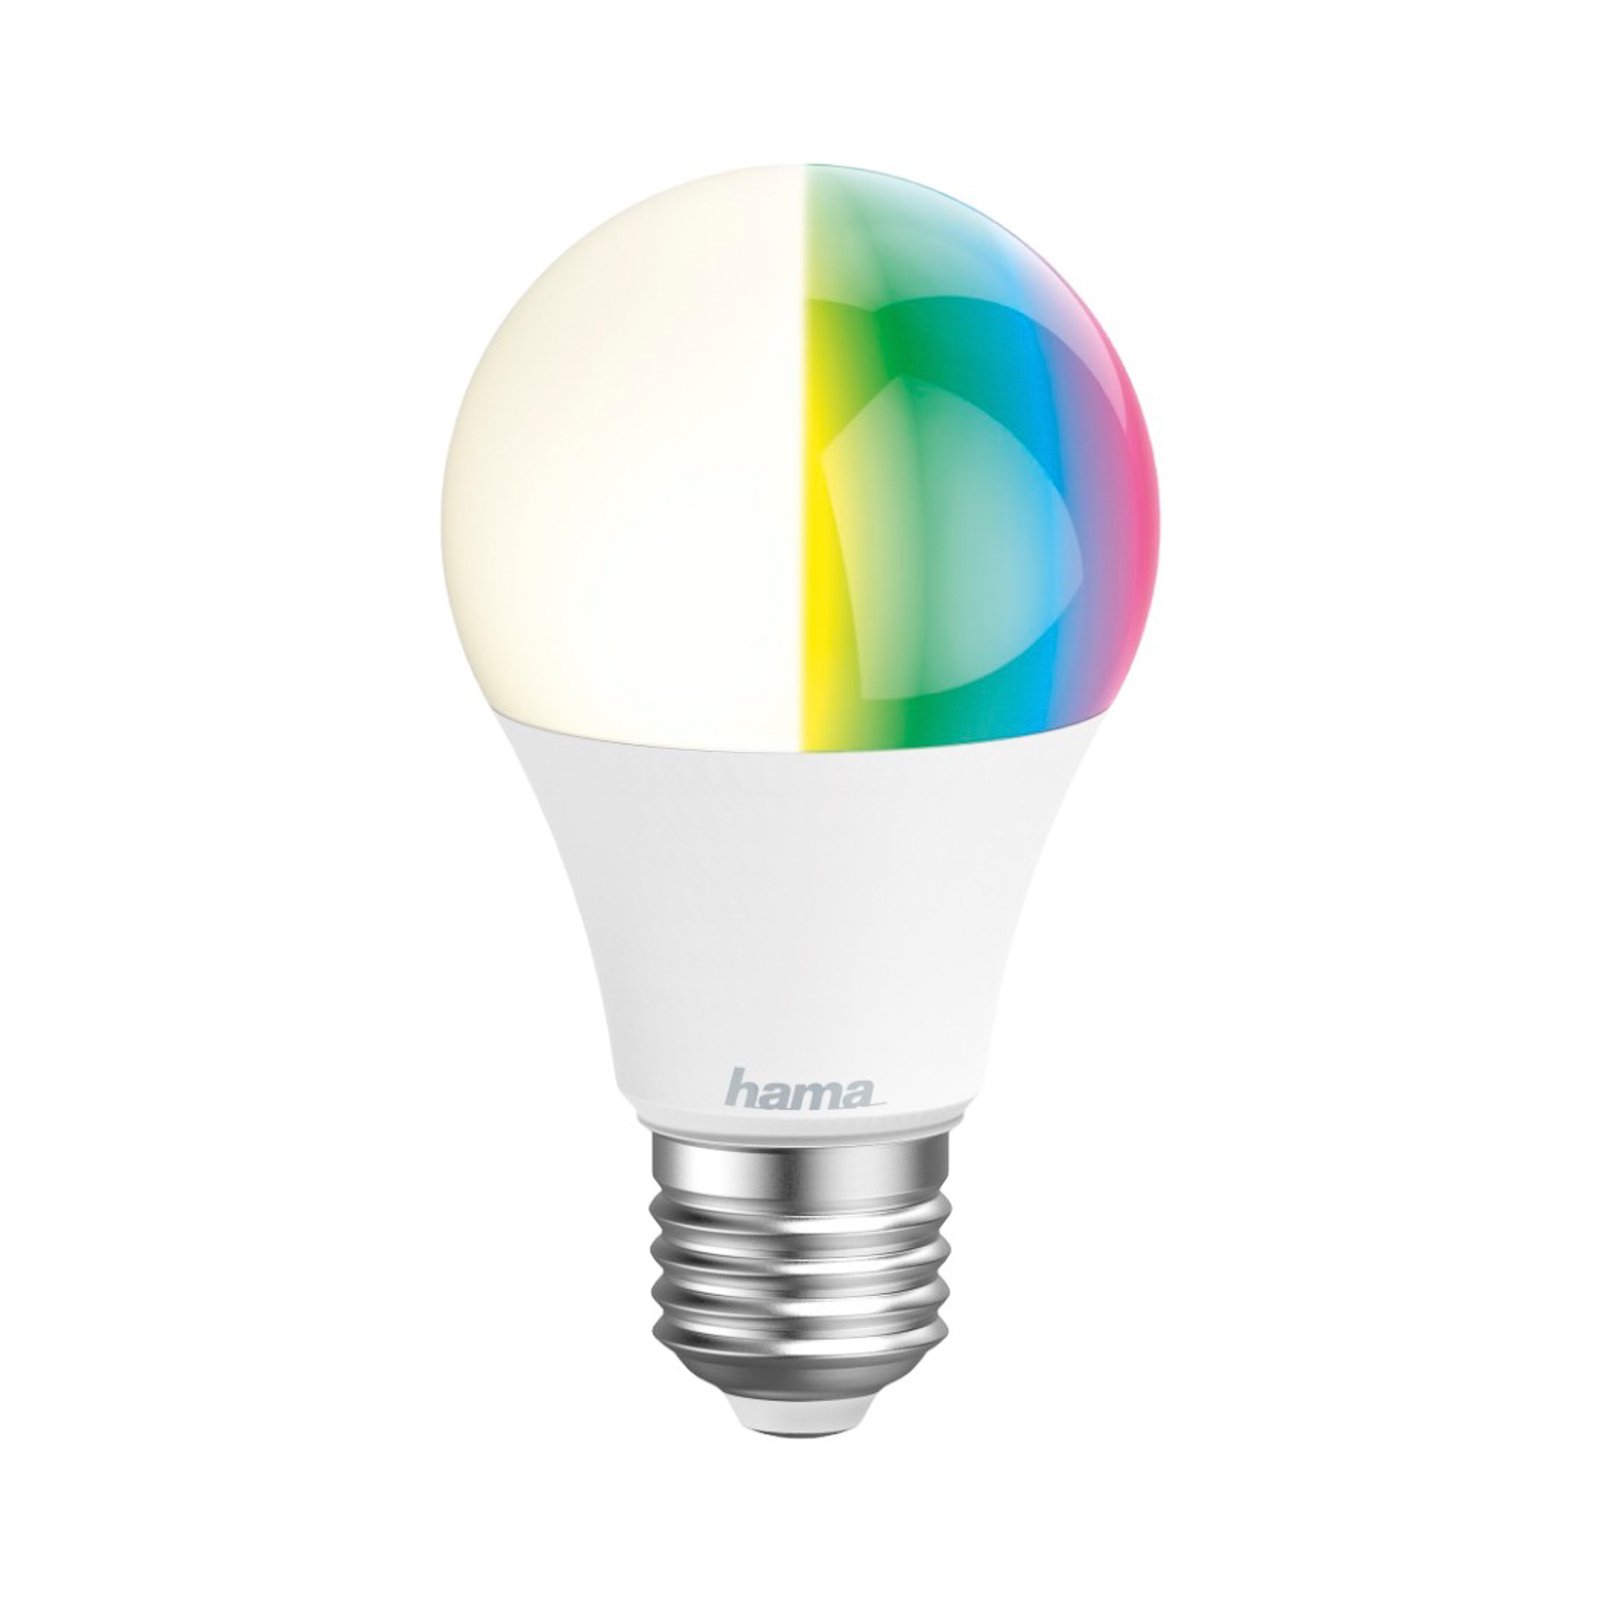 Hama WLAN LED lamp E27 A60 10W RGBW dimmerdatav opaalne